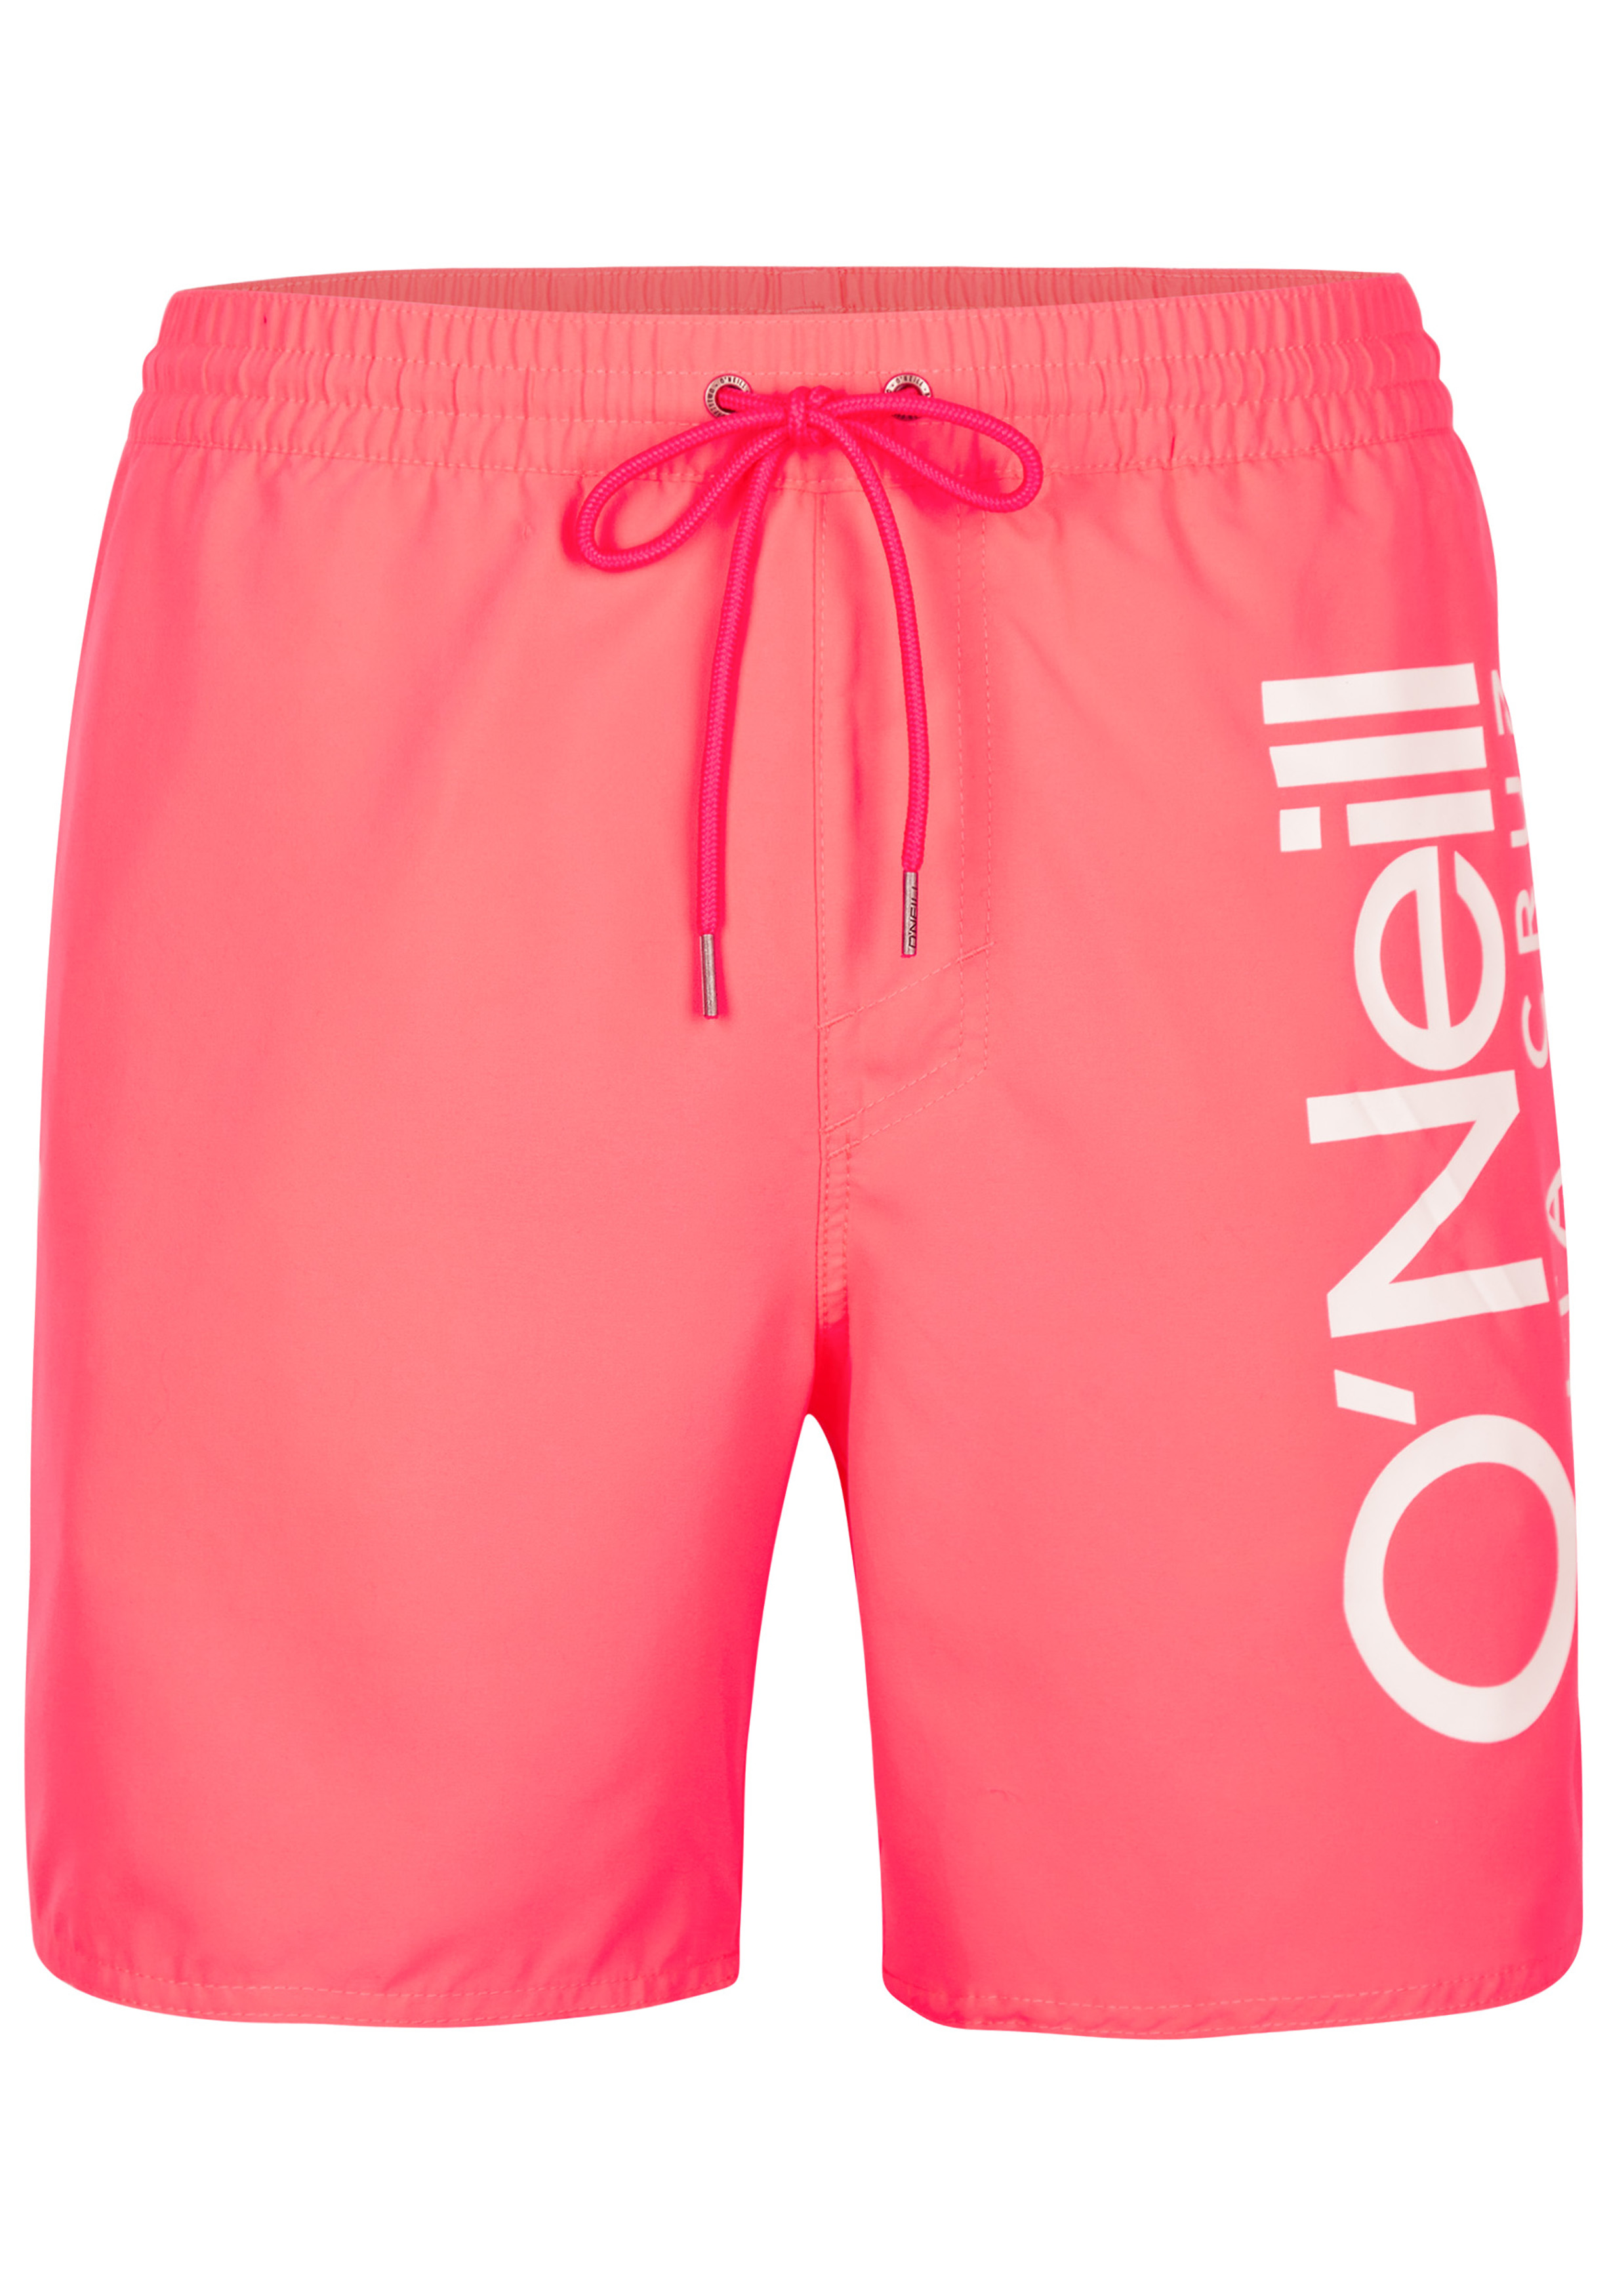 wenselijk Postcode Stun O'Neill heren zwembroek, Original Cali Shorts, fuchsia roze, Divan - Shop  de nieuwste voorjaarsmode